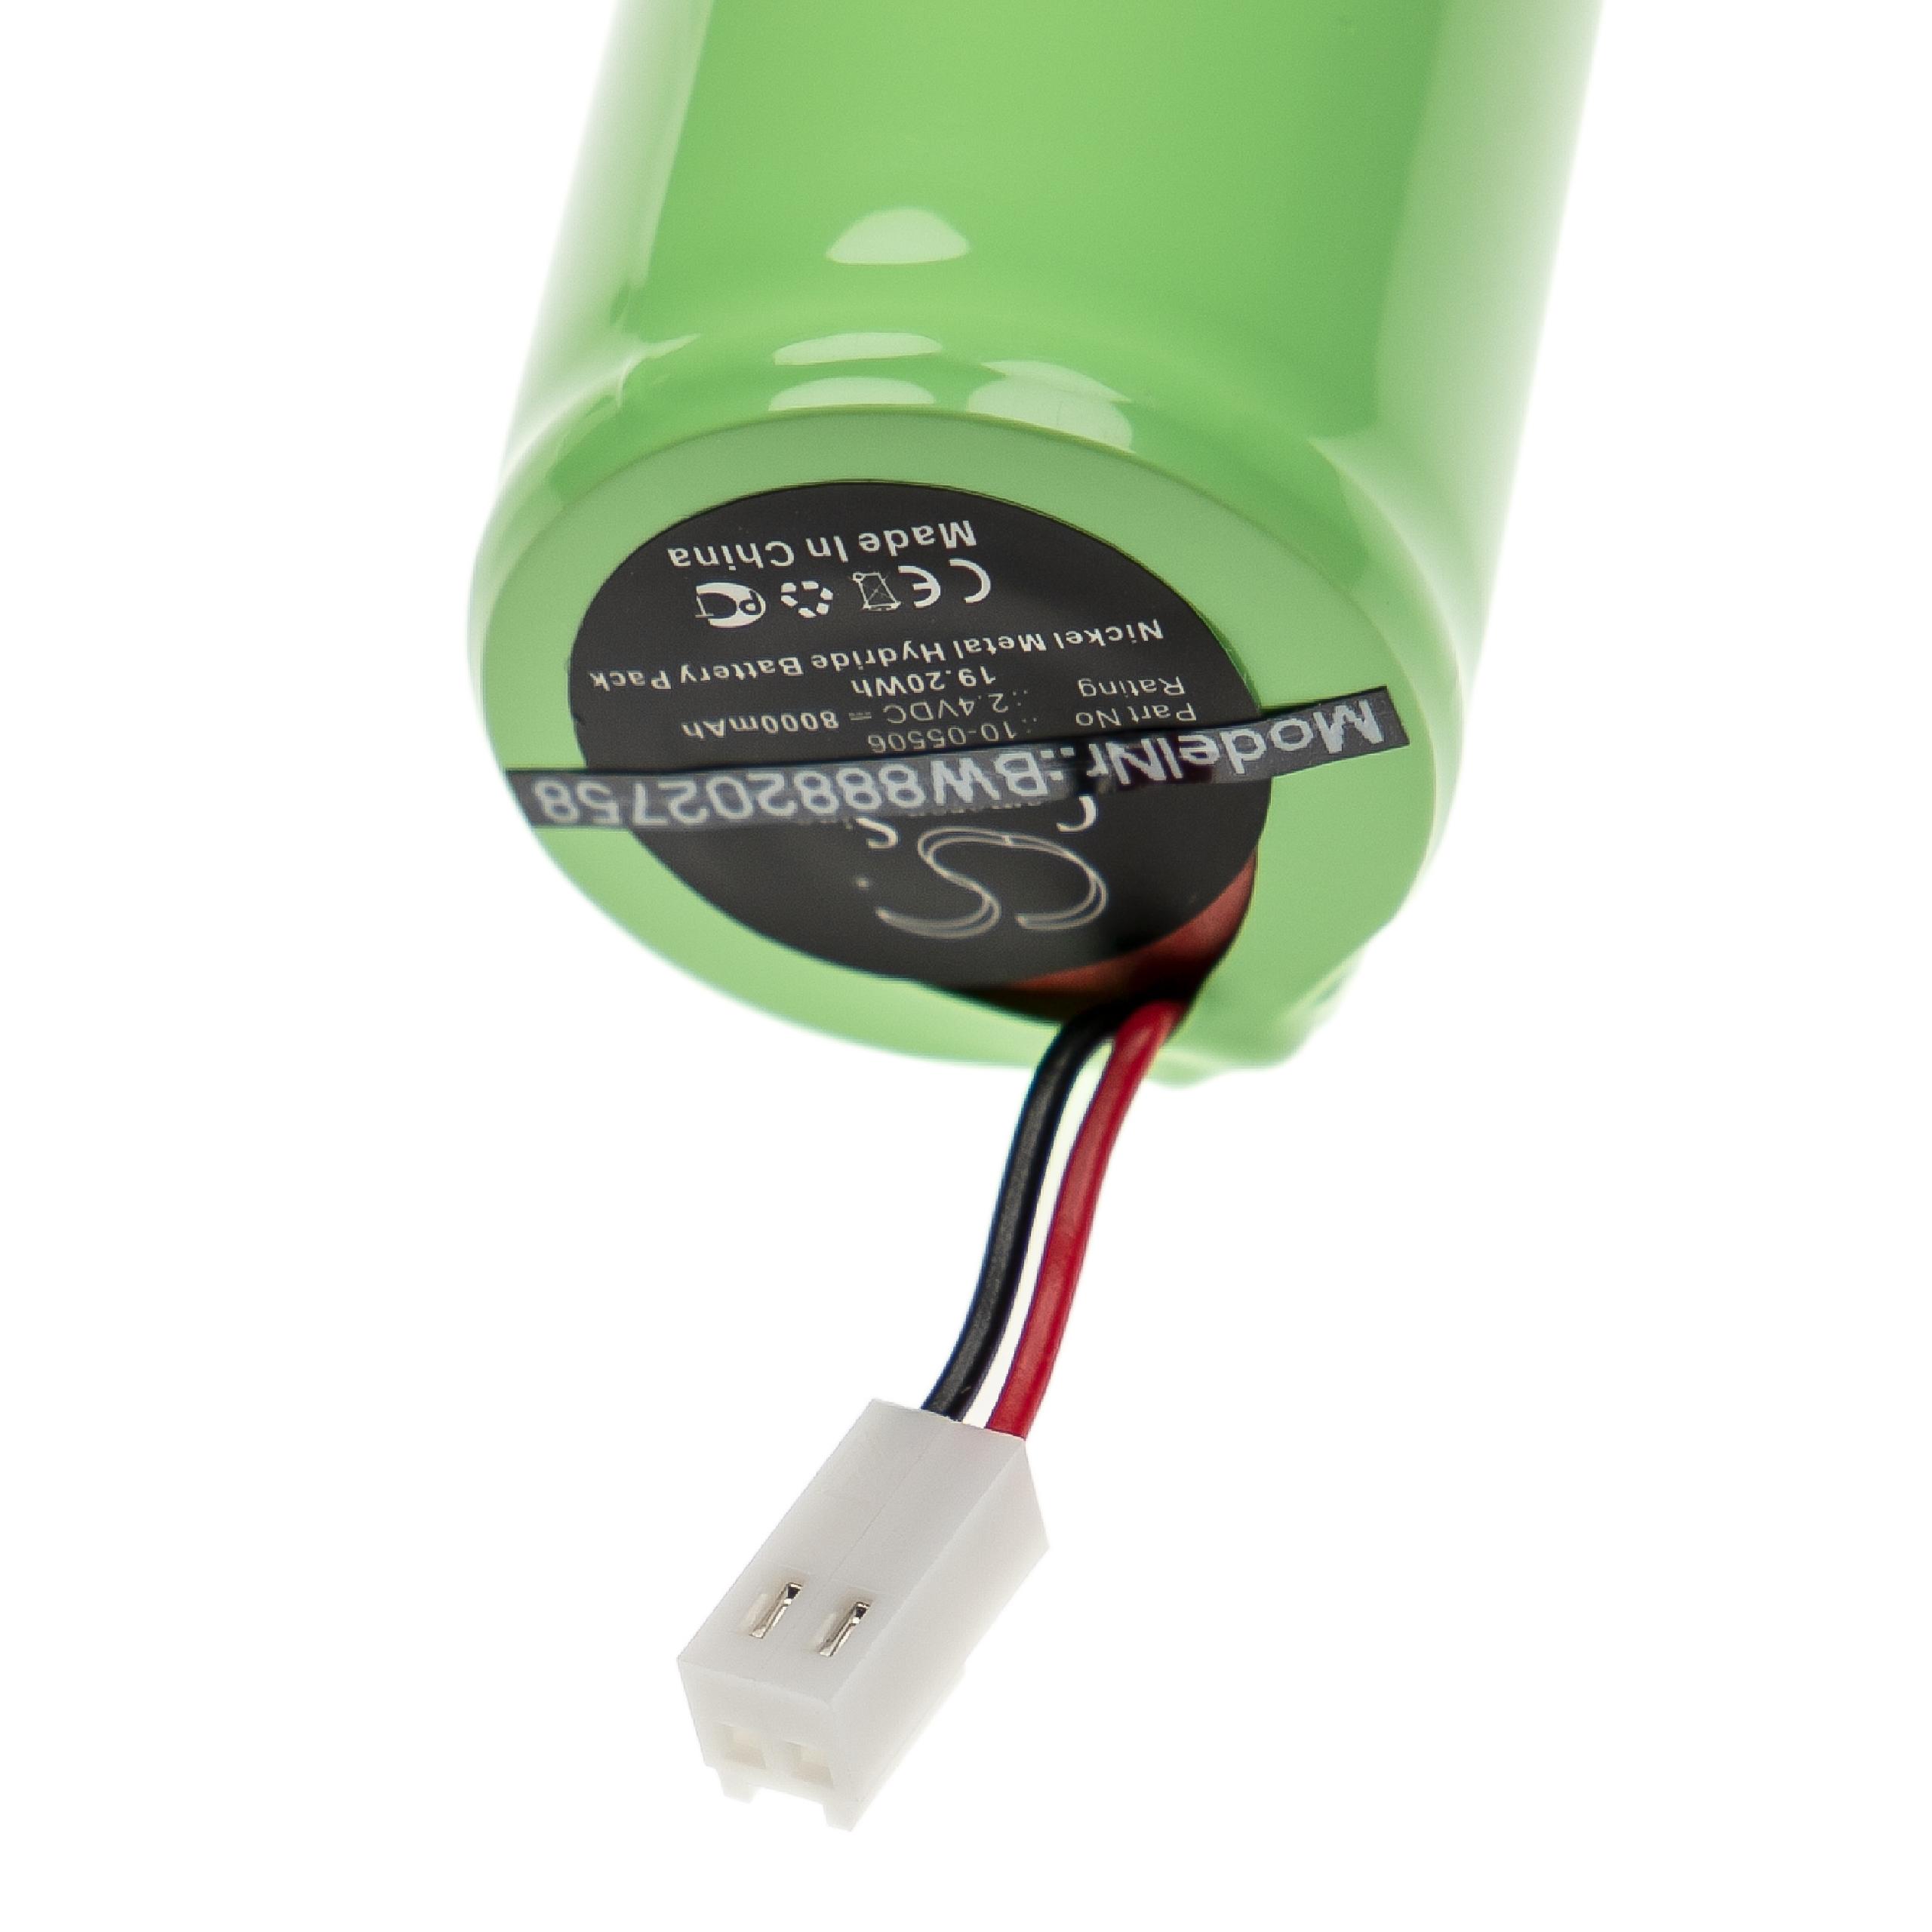 Batterie remplace Geo-Fennel 10-05506, GF-243000-18 pour outil de mesure - 8000mAh 2,4V NiMH